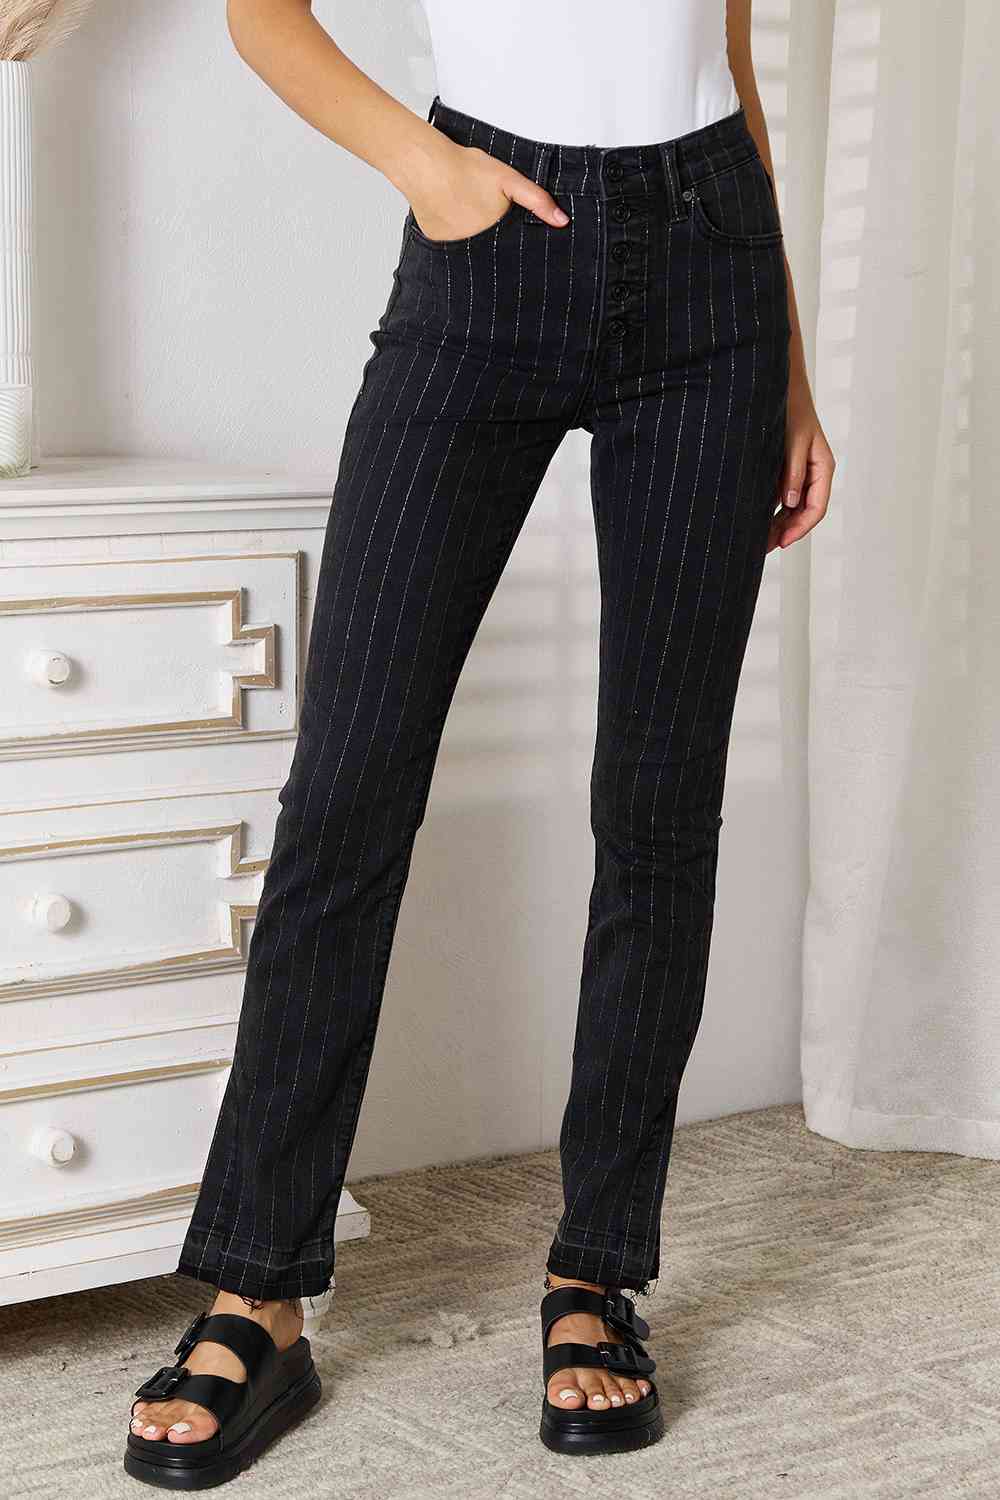 Kancan Striped Black Denim Relaxed Skinny Jeans